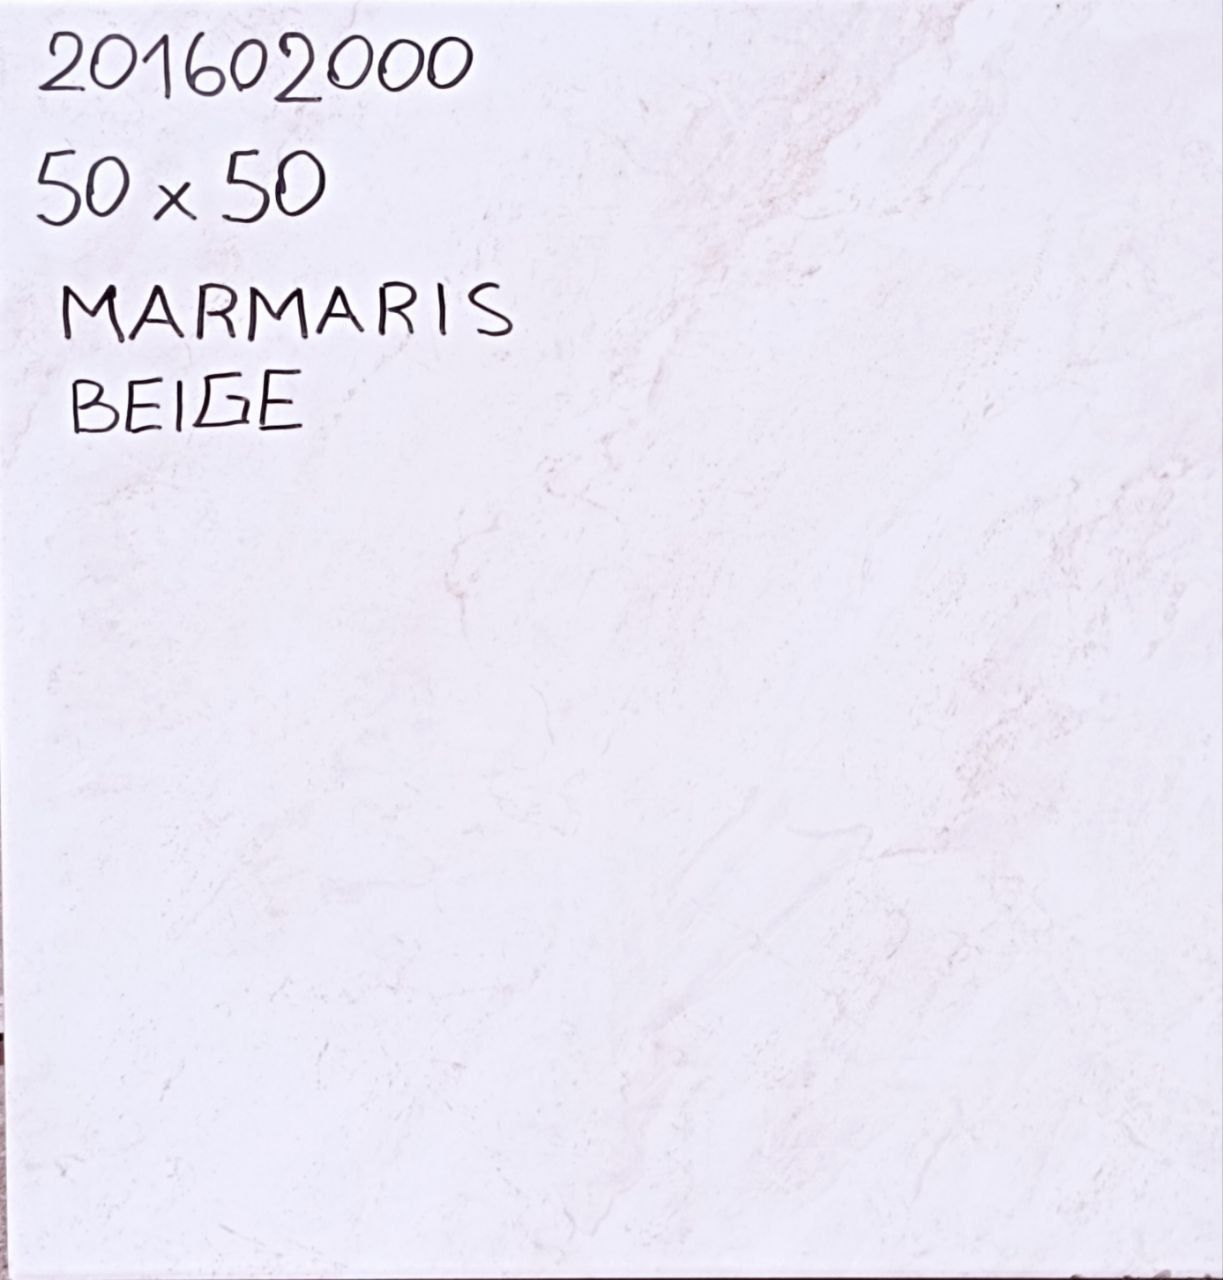 CERAMICA 50 X 50 PISO/PARED MARMARIS-BEIGE-50 BRILLO PEI IV (10)